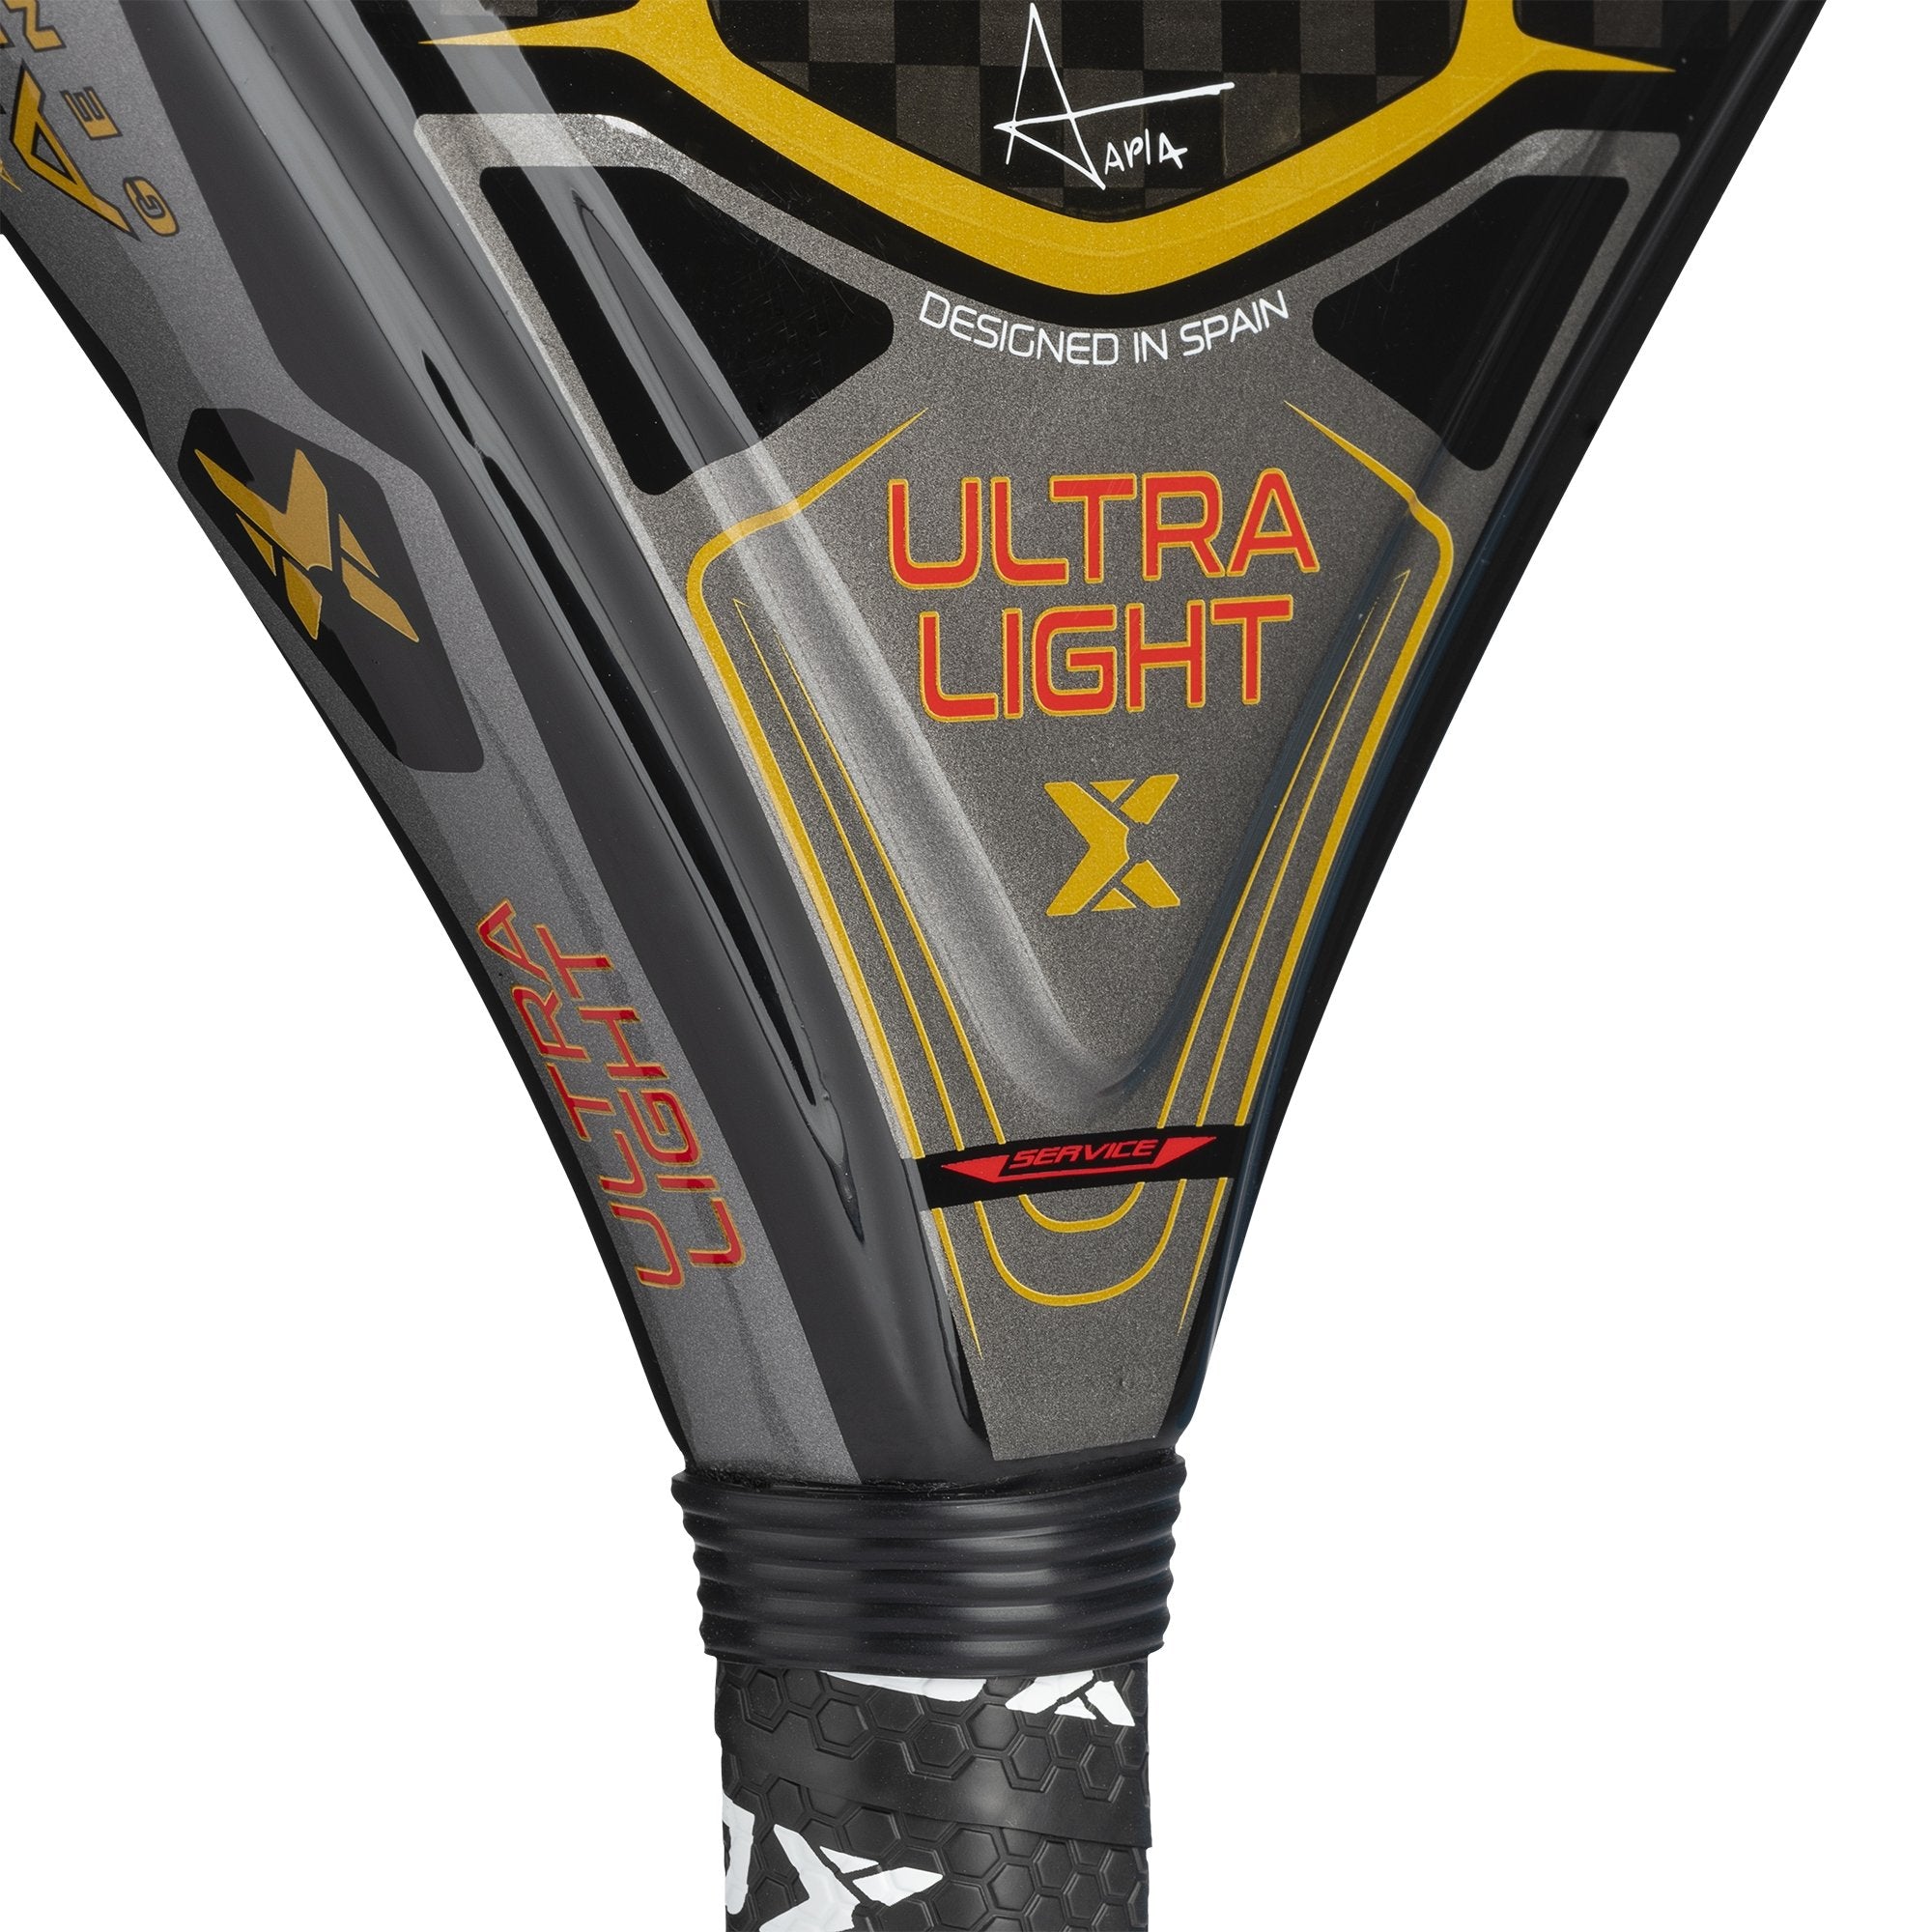 At10 Genius Ultra Light Nox  MKP